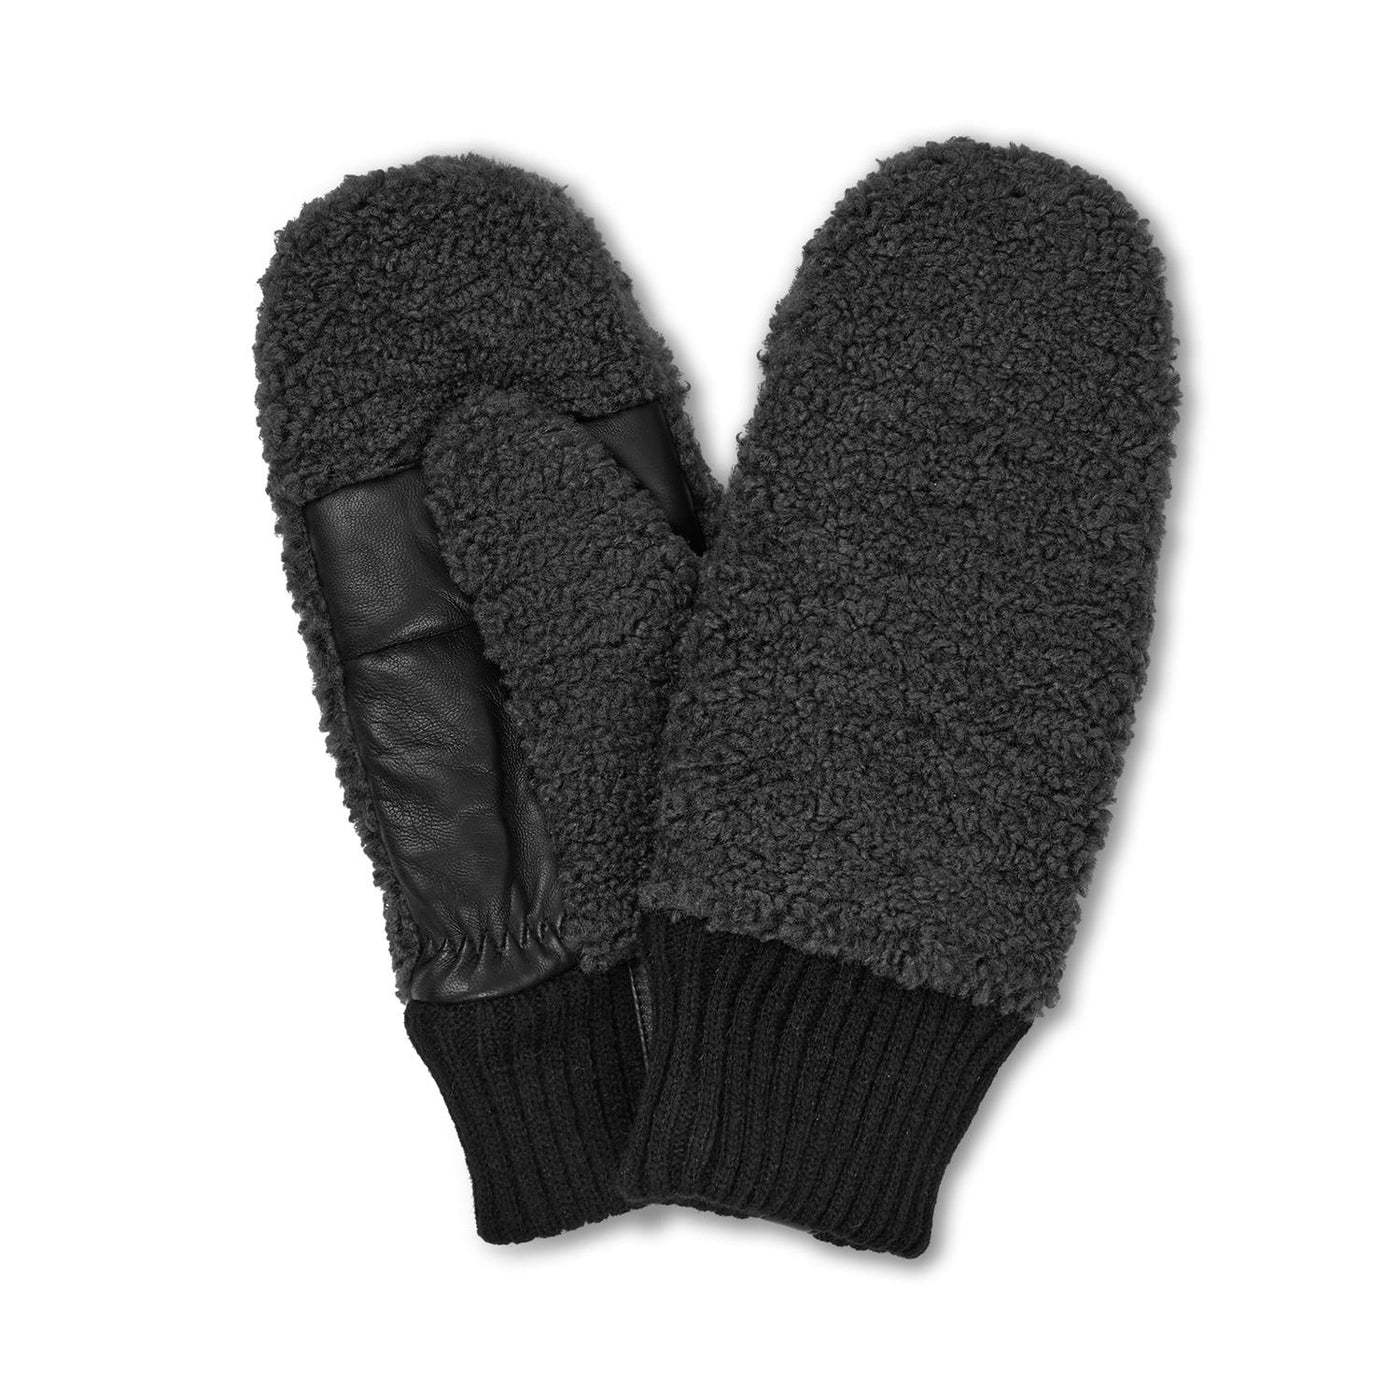 Day cuddle mittens